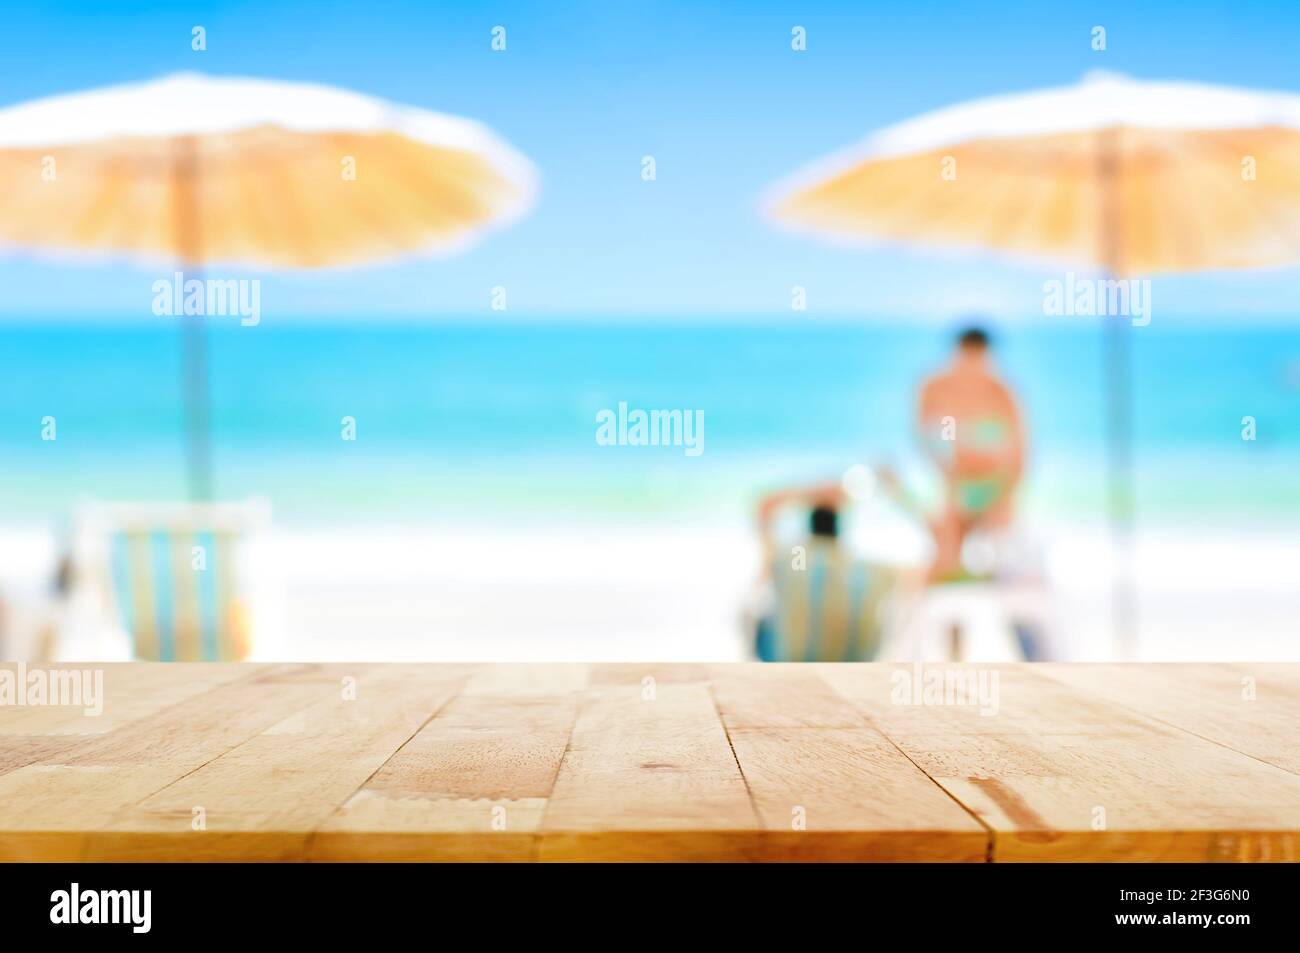 Holztischplatte auf verschwommenem schönen weißen Sand Strand Hintergrund Bei einigen Personen - kann für Montage oder verwendet werden Zeigen Sie Ihre Produkte an Stockfoto